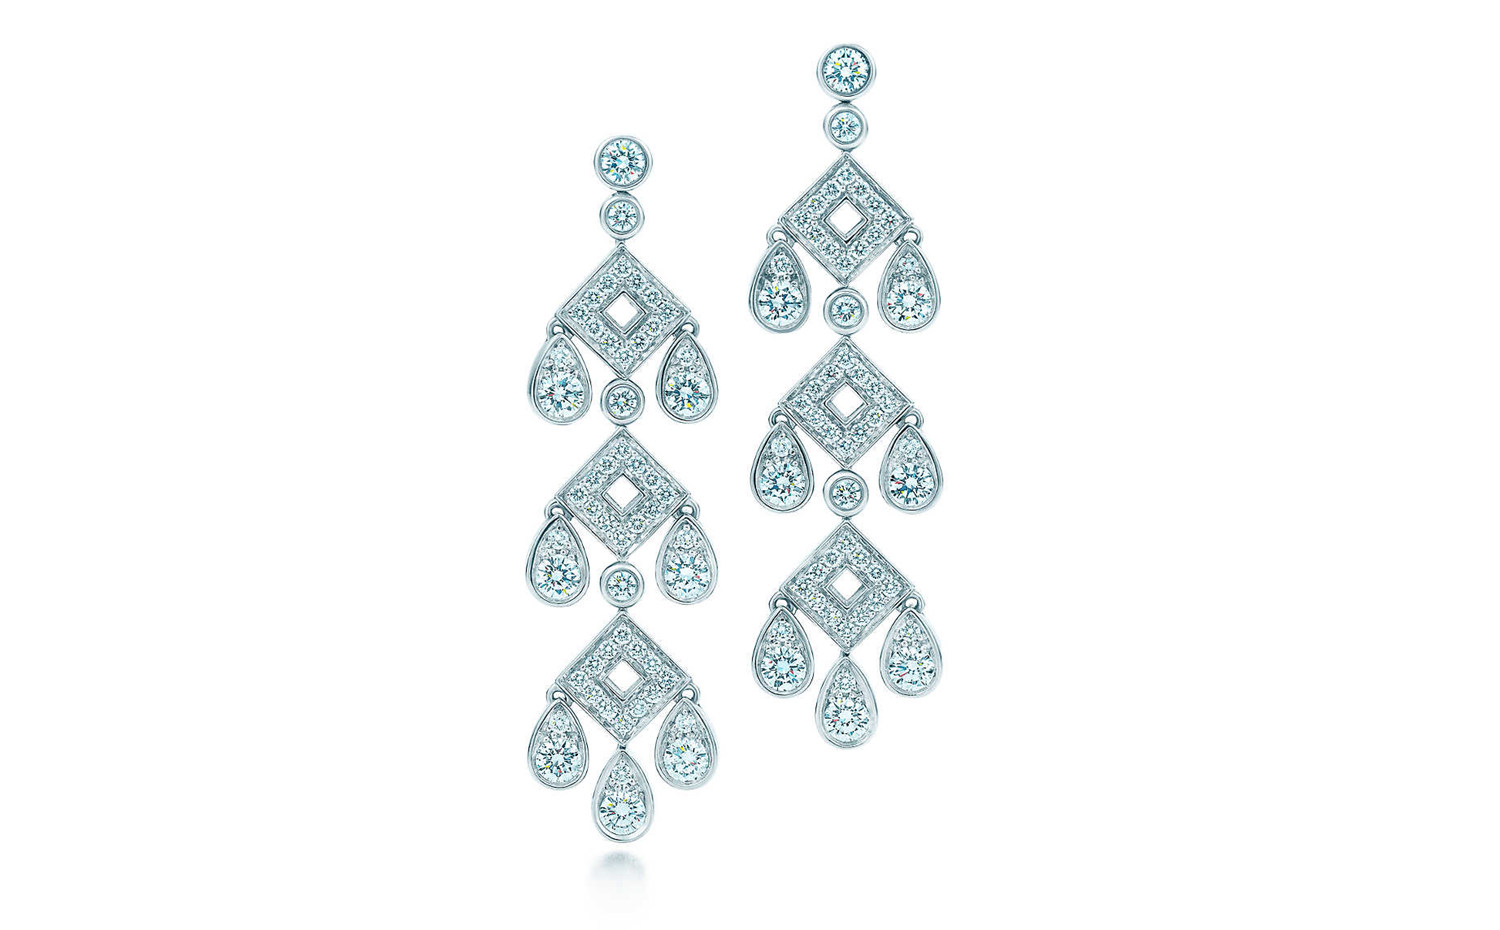 Tiffany & Co. Jazz Age Glamour pagoda earrings